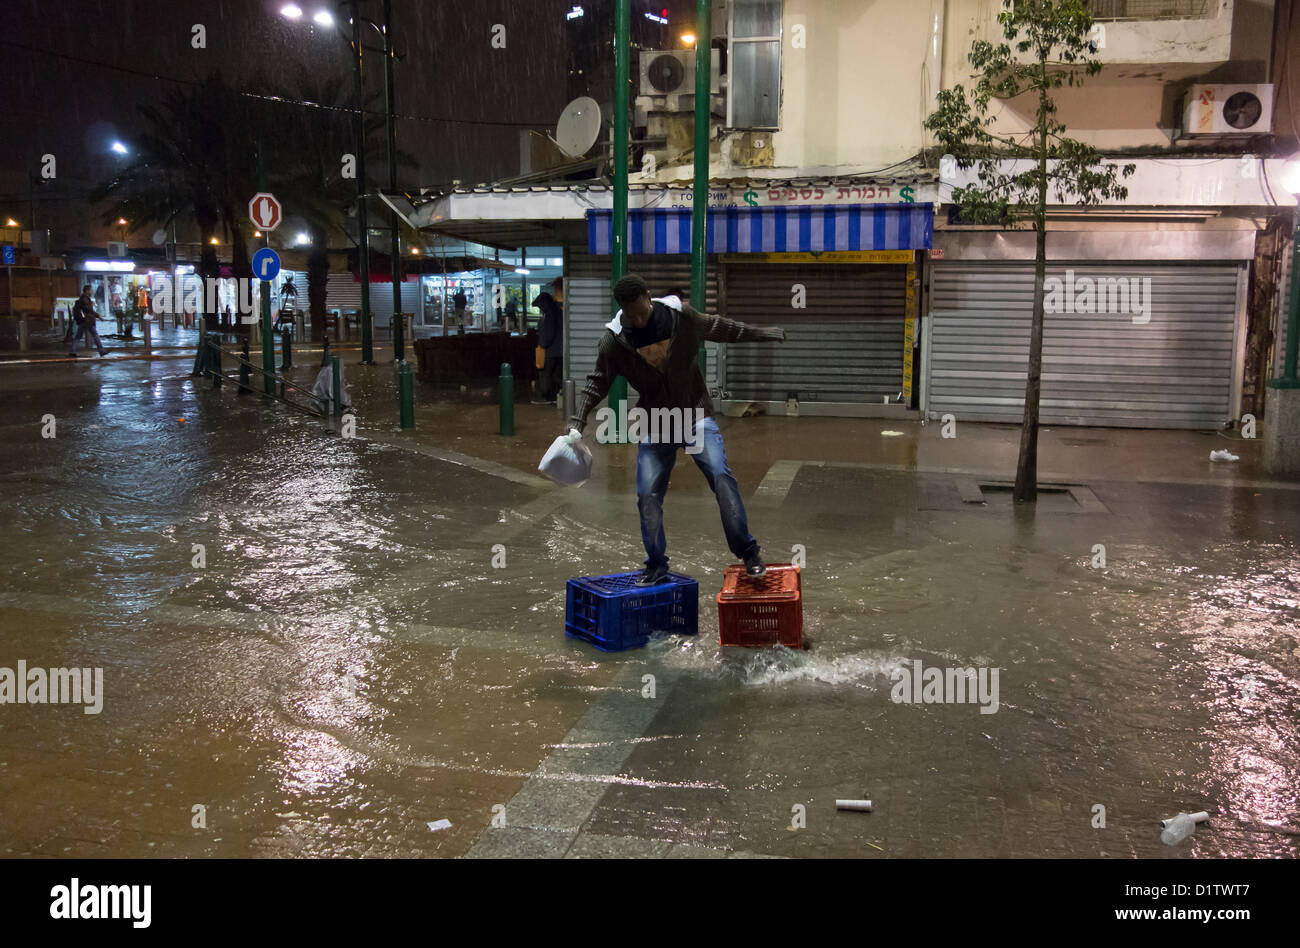 Un migrant africain traversant une rue inondée en un jour de pluie dans le quartier de Neve Shaanan qui est devenu le foyer de l'une des plus grandes populations d'Africains et d'autres migrants dans le sud de tel Aviv Israël Banque D'Images